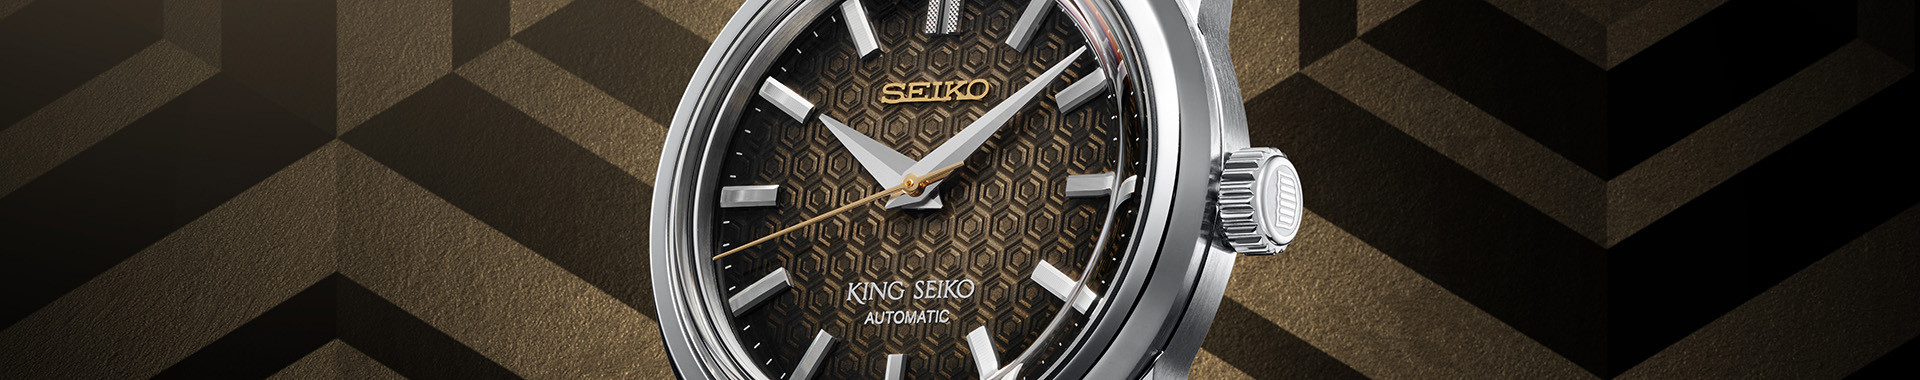 King Seiko Femme : montre de luxe - Seiko officiel